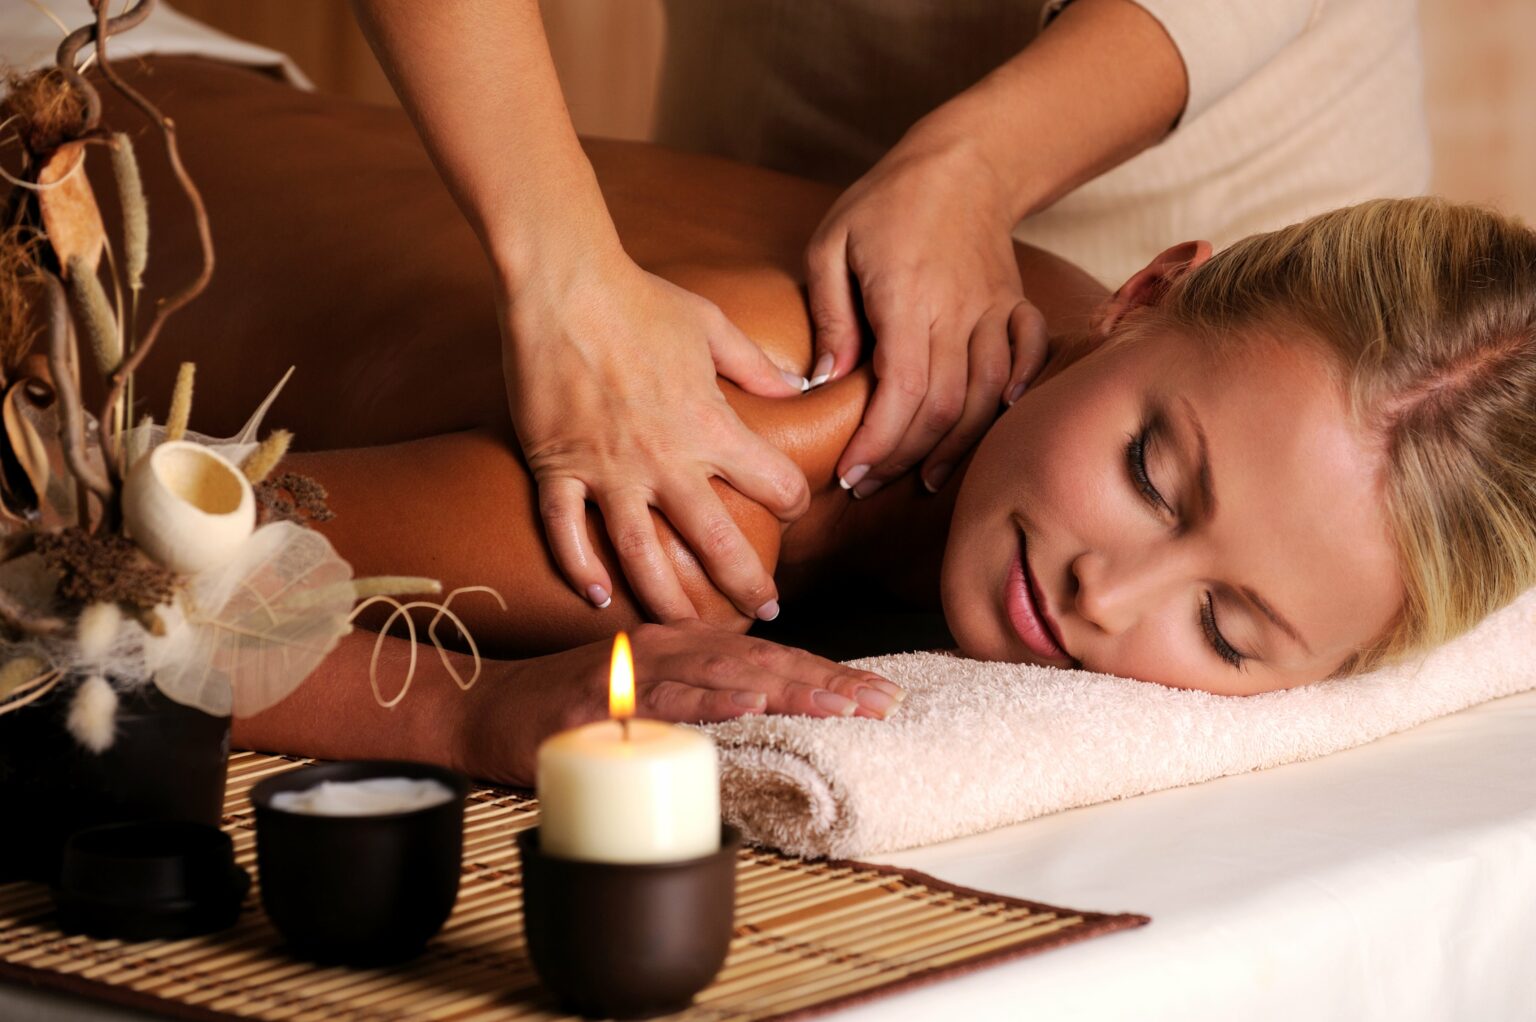 massaggiatore-che-fa-massaggio-sulla-spalla-femminile-nel-salone-di-bellezza-min